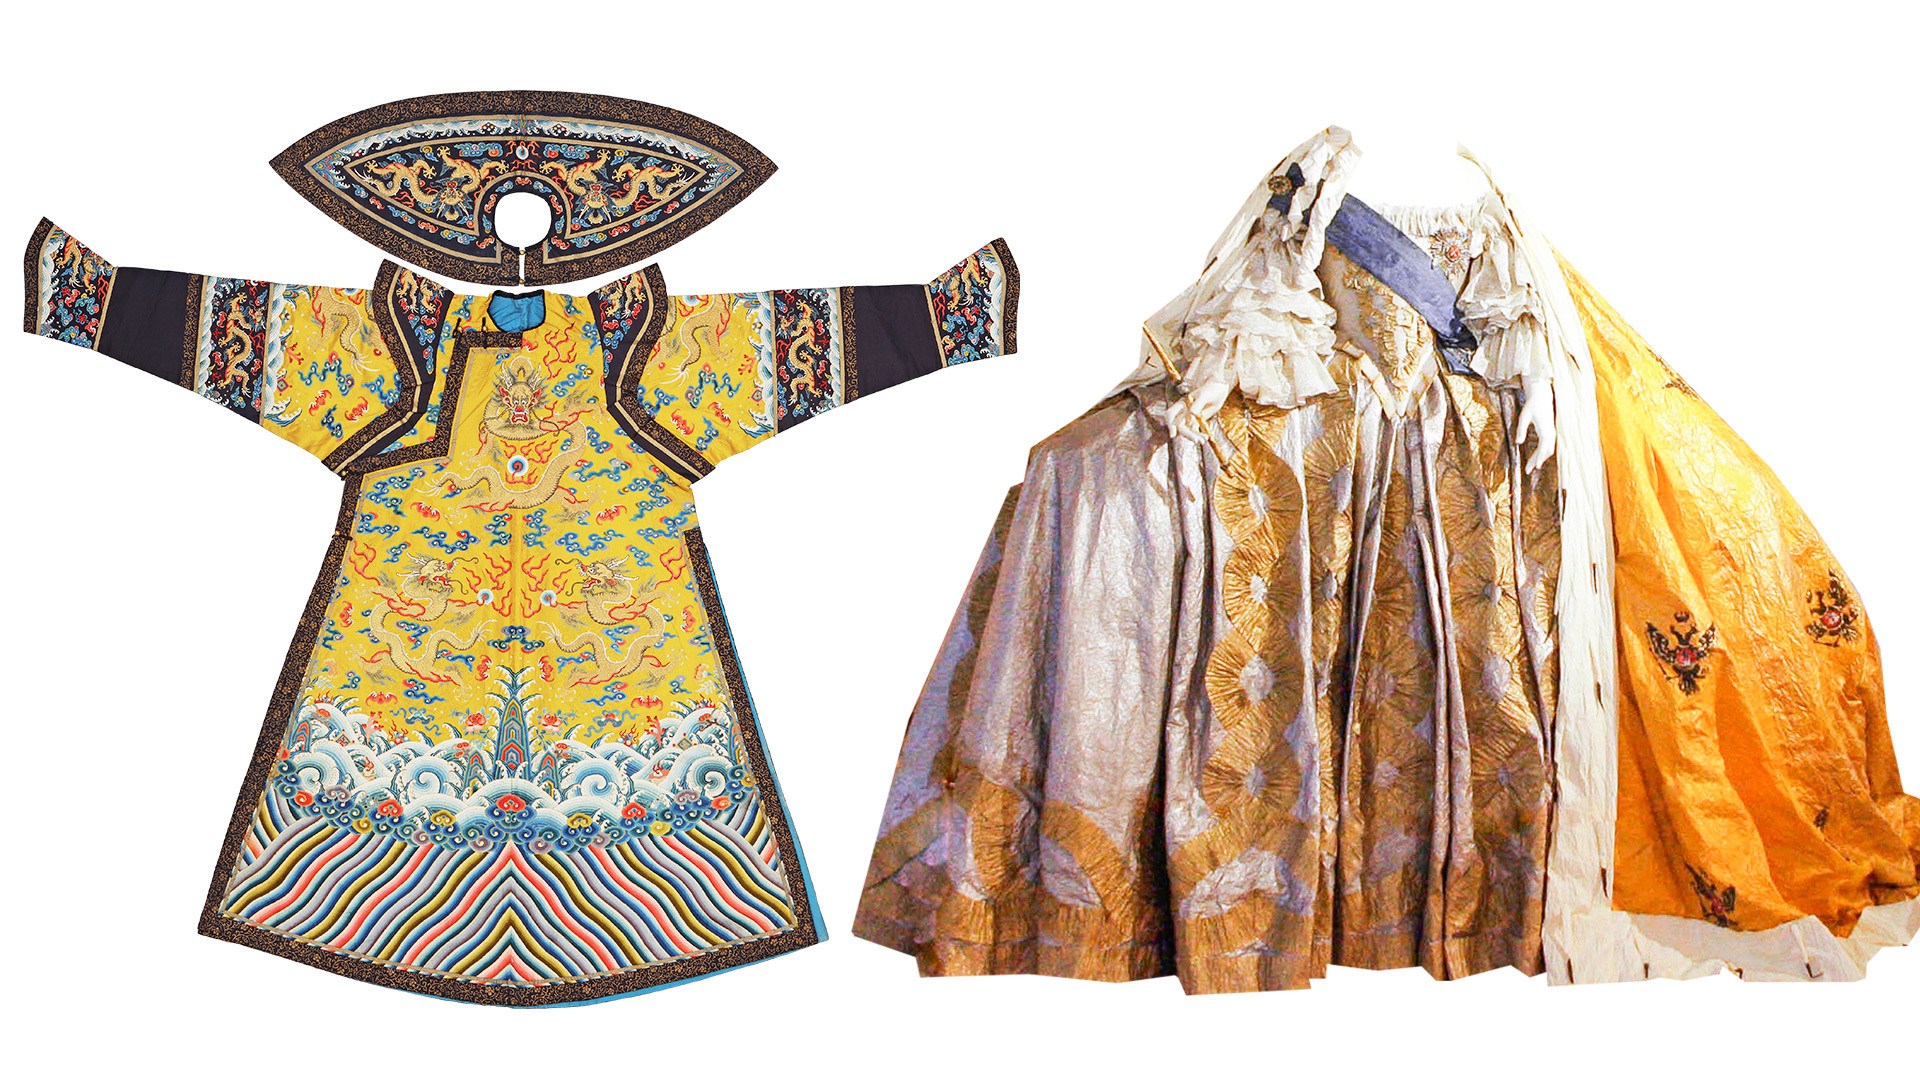 Lijevo: Svečana odjeća carice. Dinastija Qing, vladavina Qianlonga (1736.–1796.) Desno: Krunidbena haljina (najvjerojatnije Elizabete Petrovne)